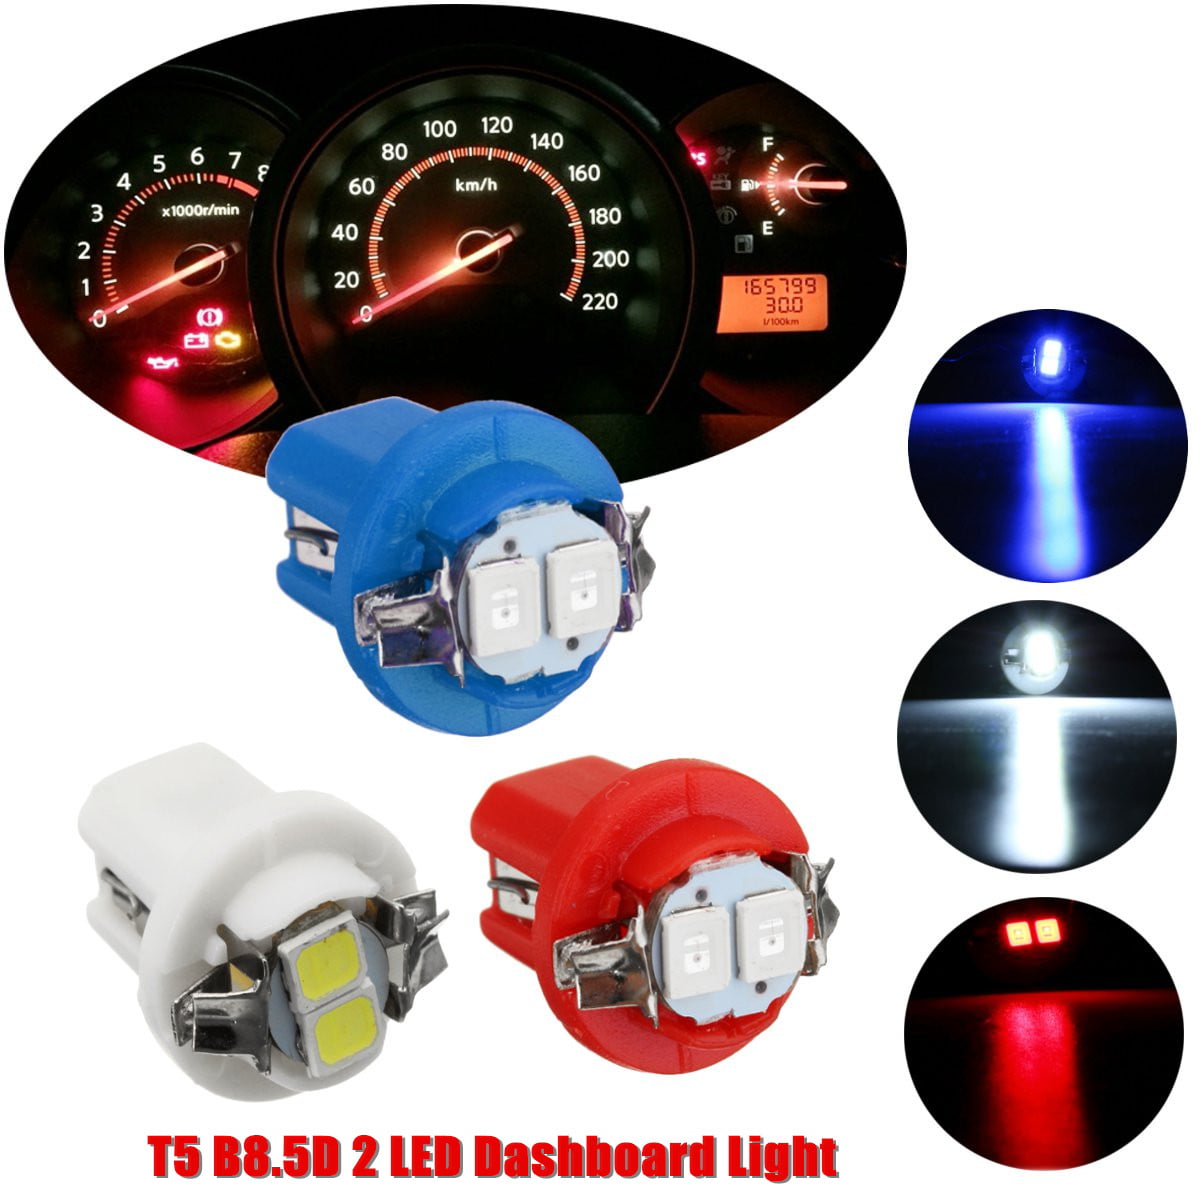 10 x Red LED B8.5D 1SMD 5050 T5 Car light Instrument lights Bulb Gauge Dashboard 